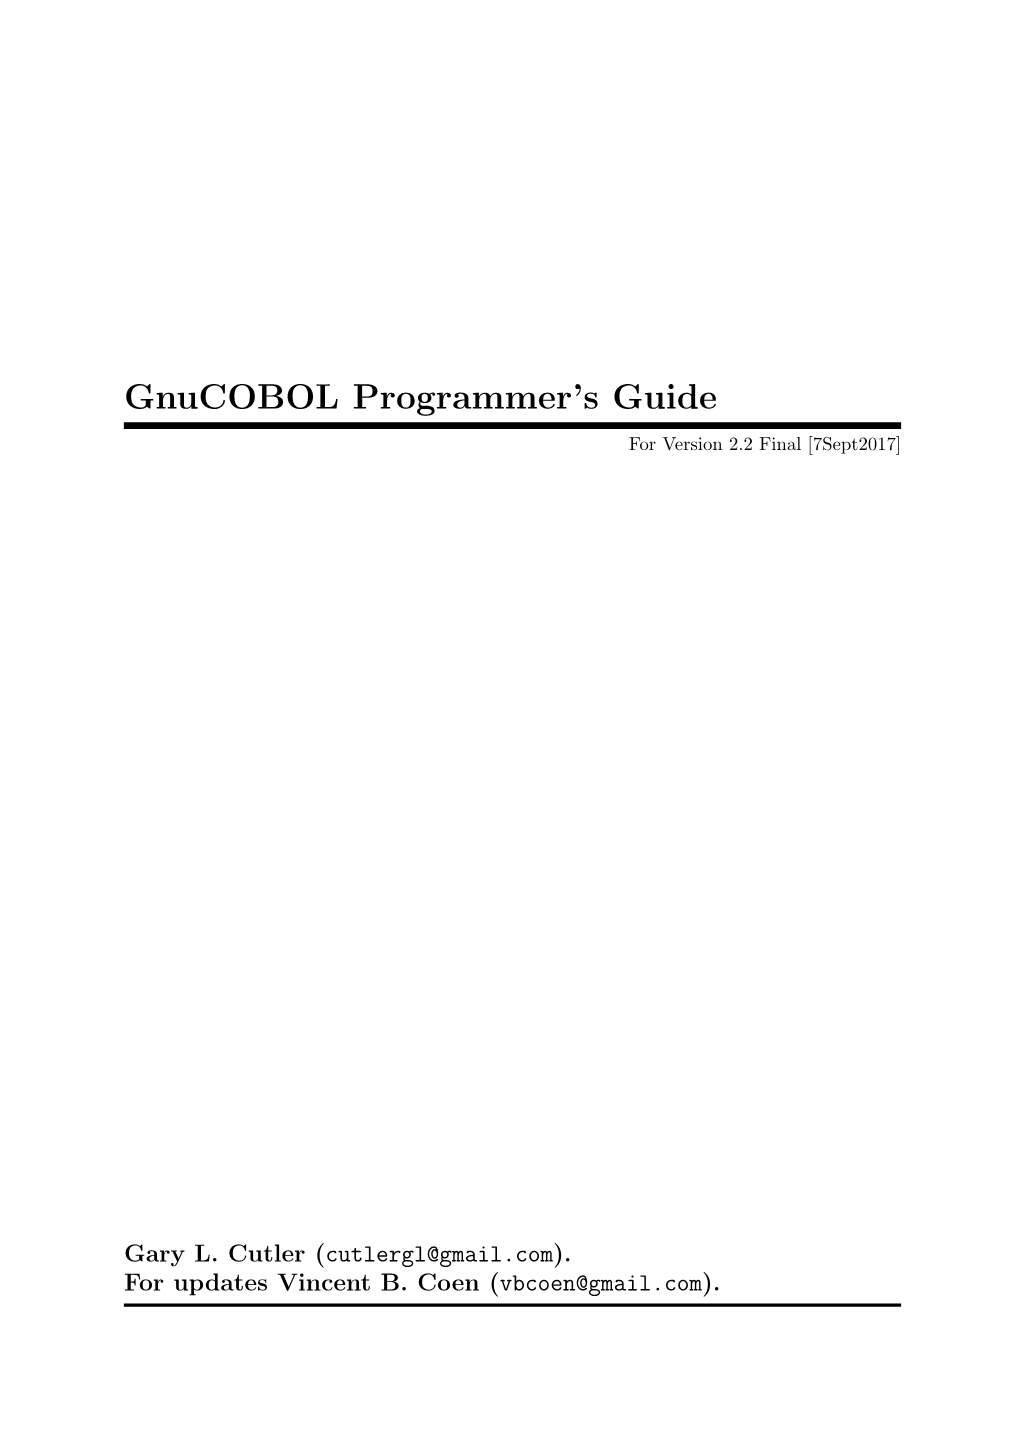 Gnucobol Programmer's Guide